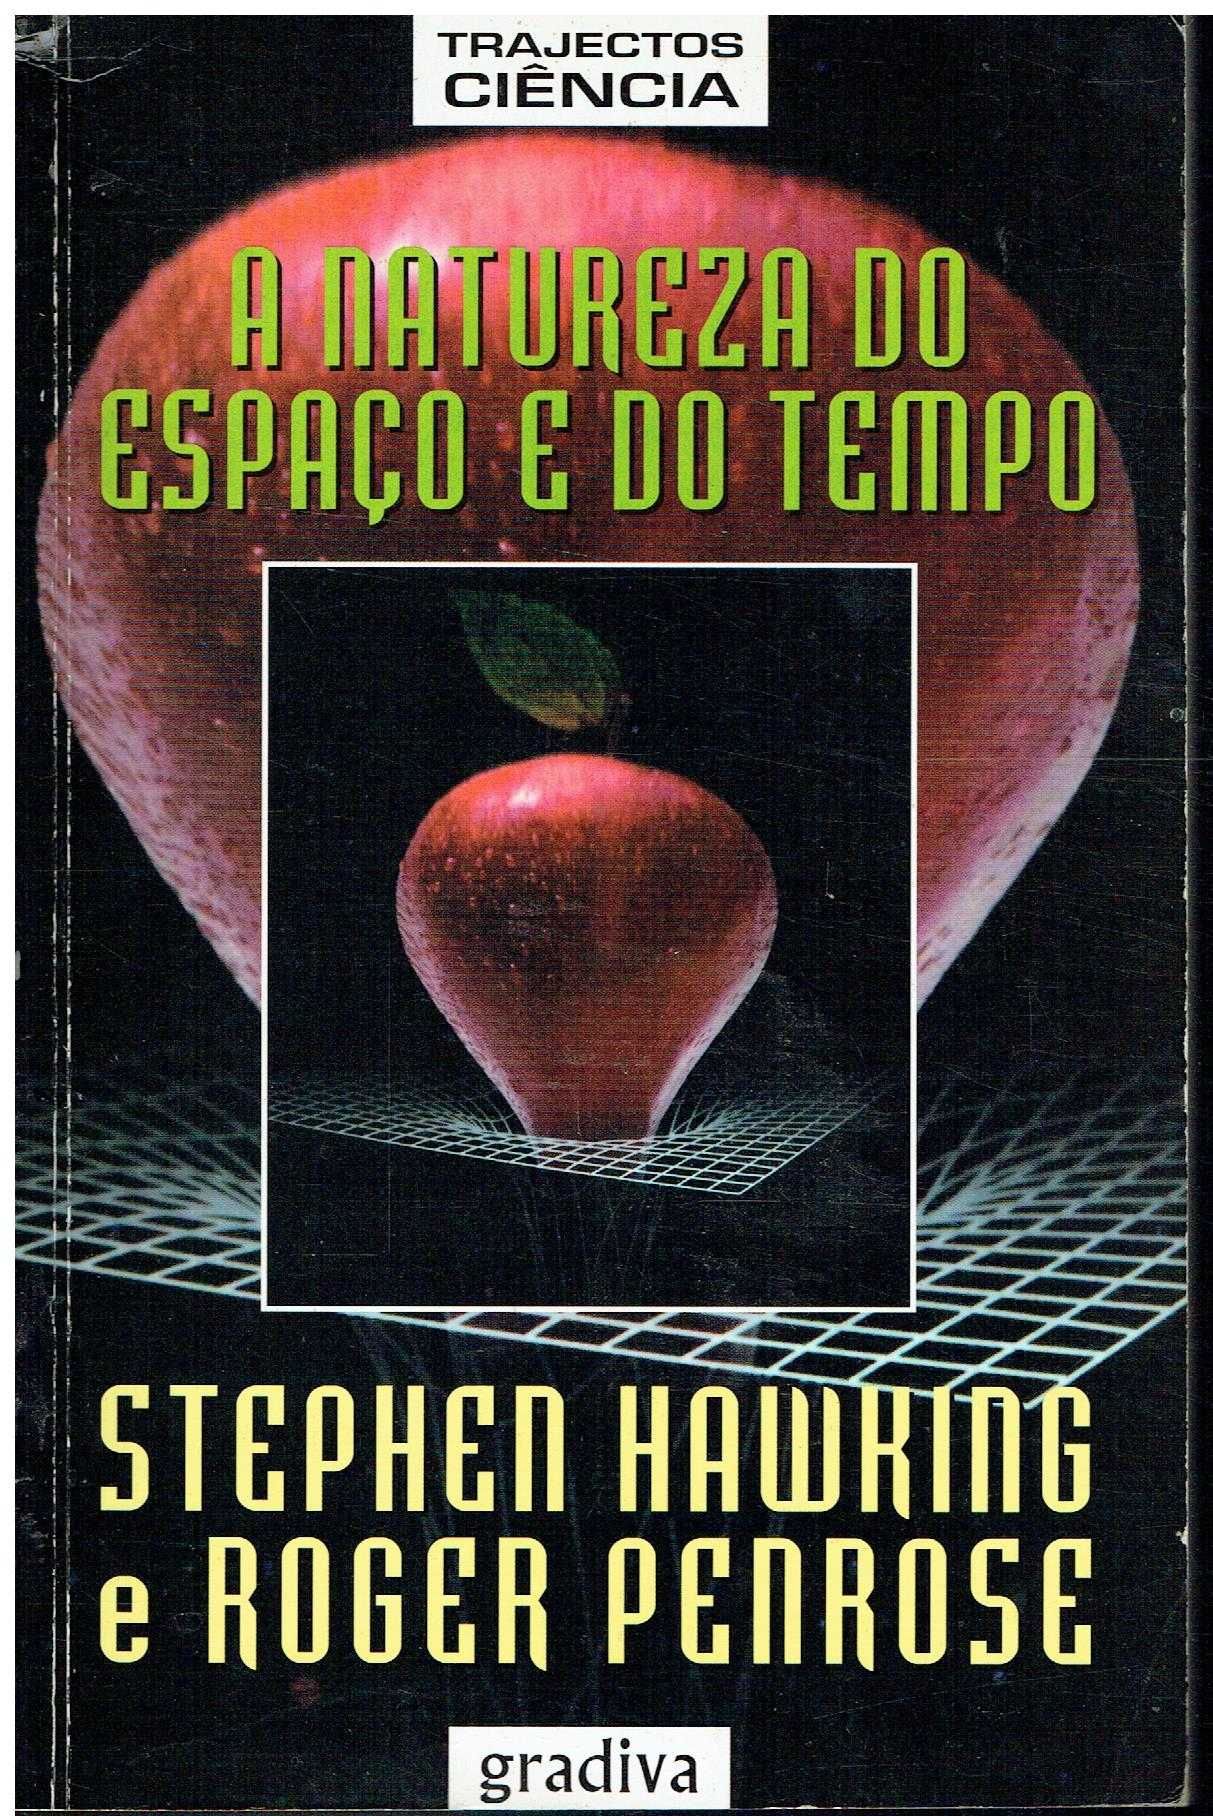 12206

Livros de Stephen Hawking